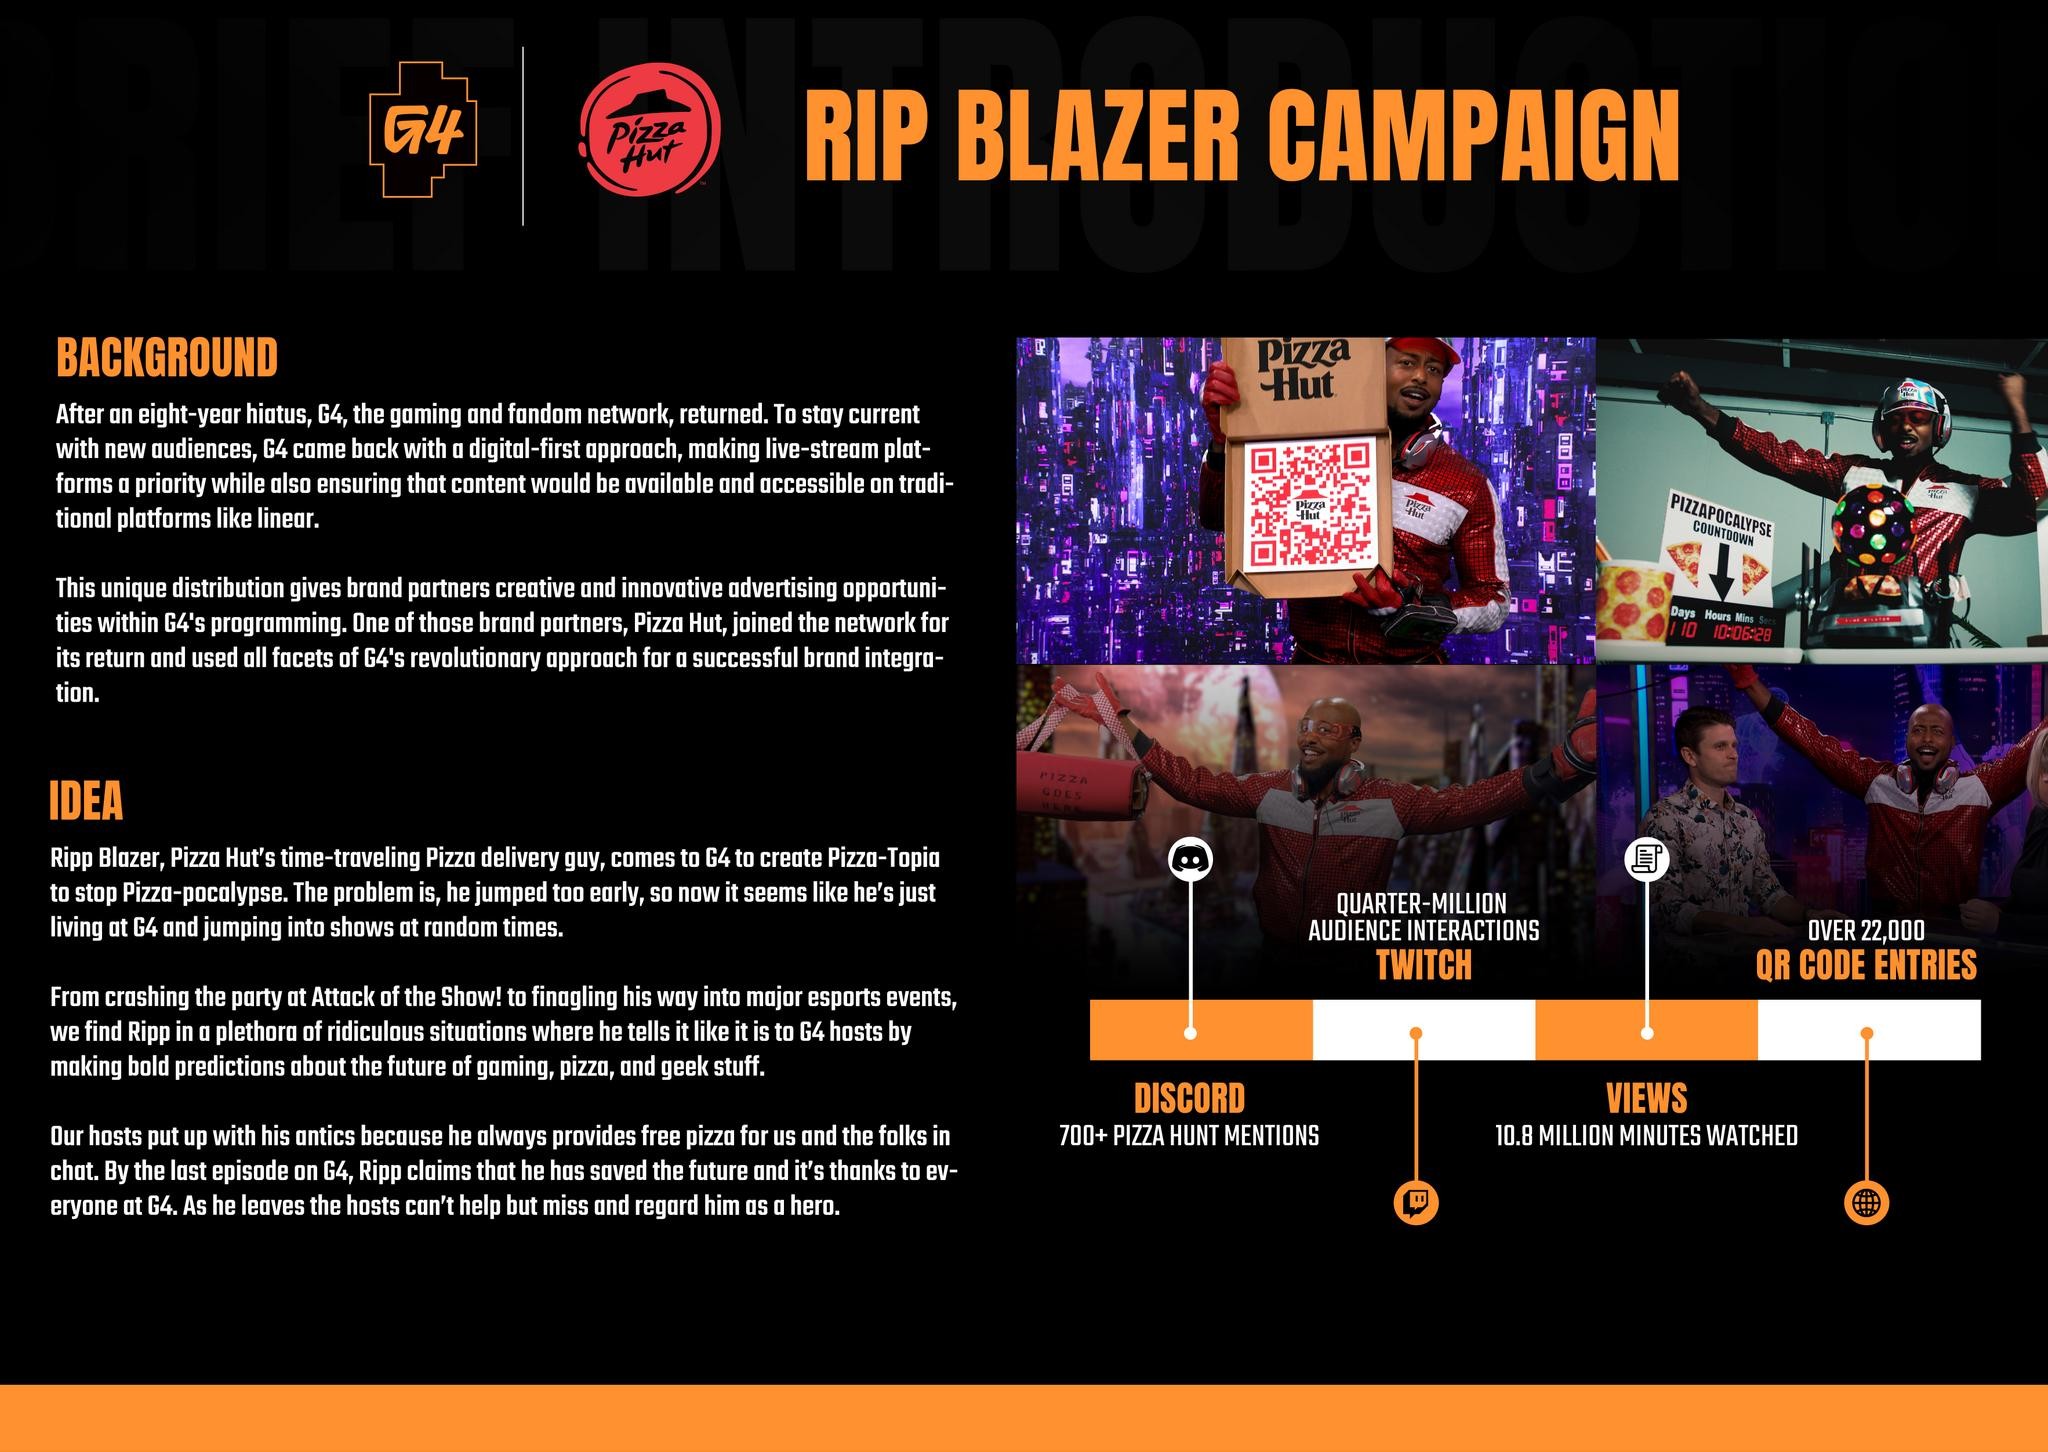 G4 and Pizza Hut's Rip Blazer Campaign